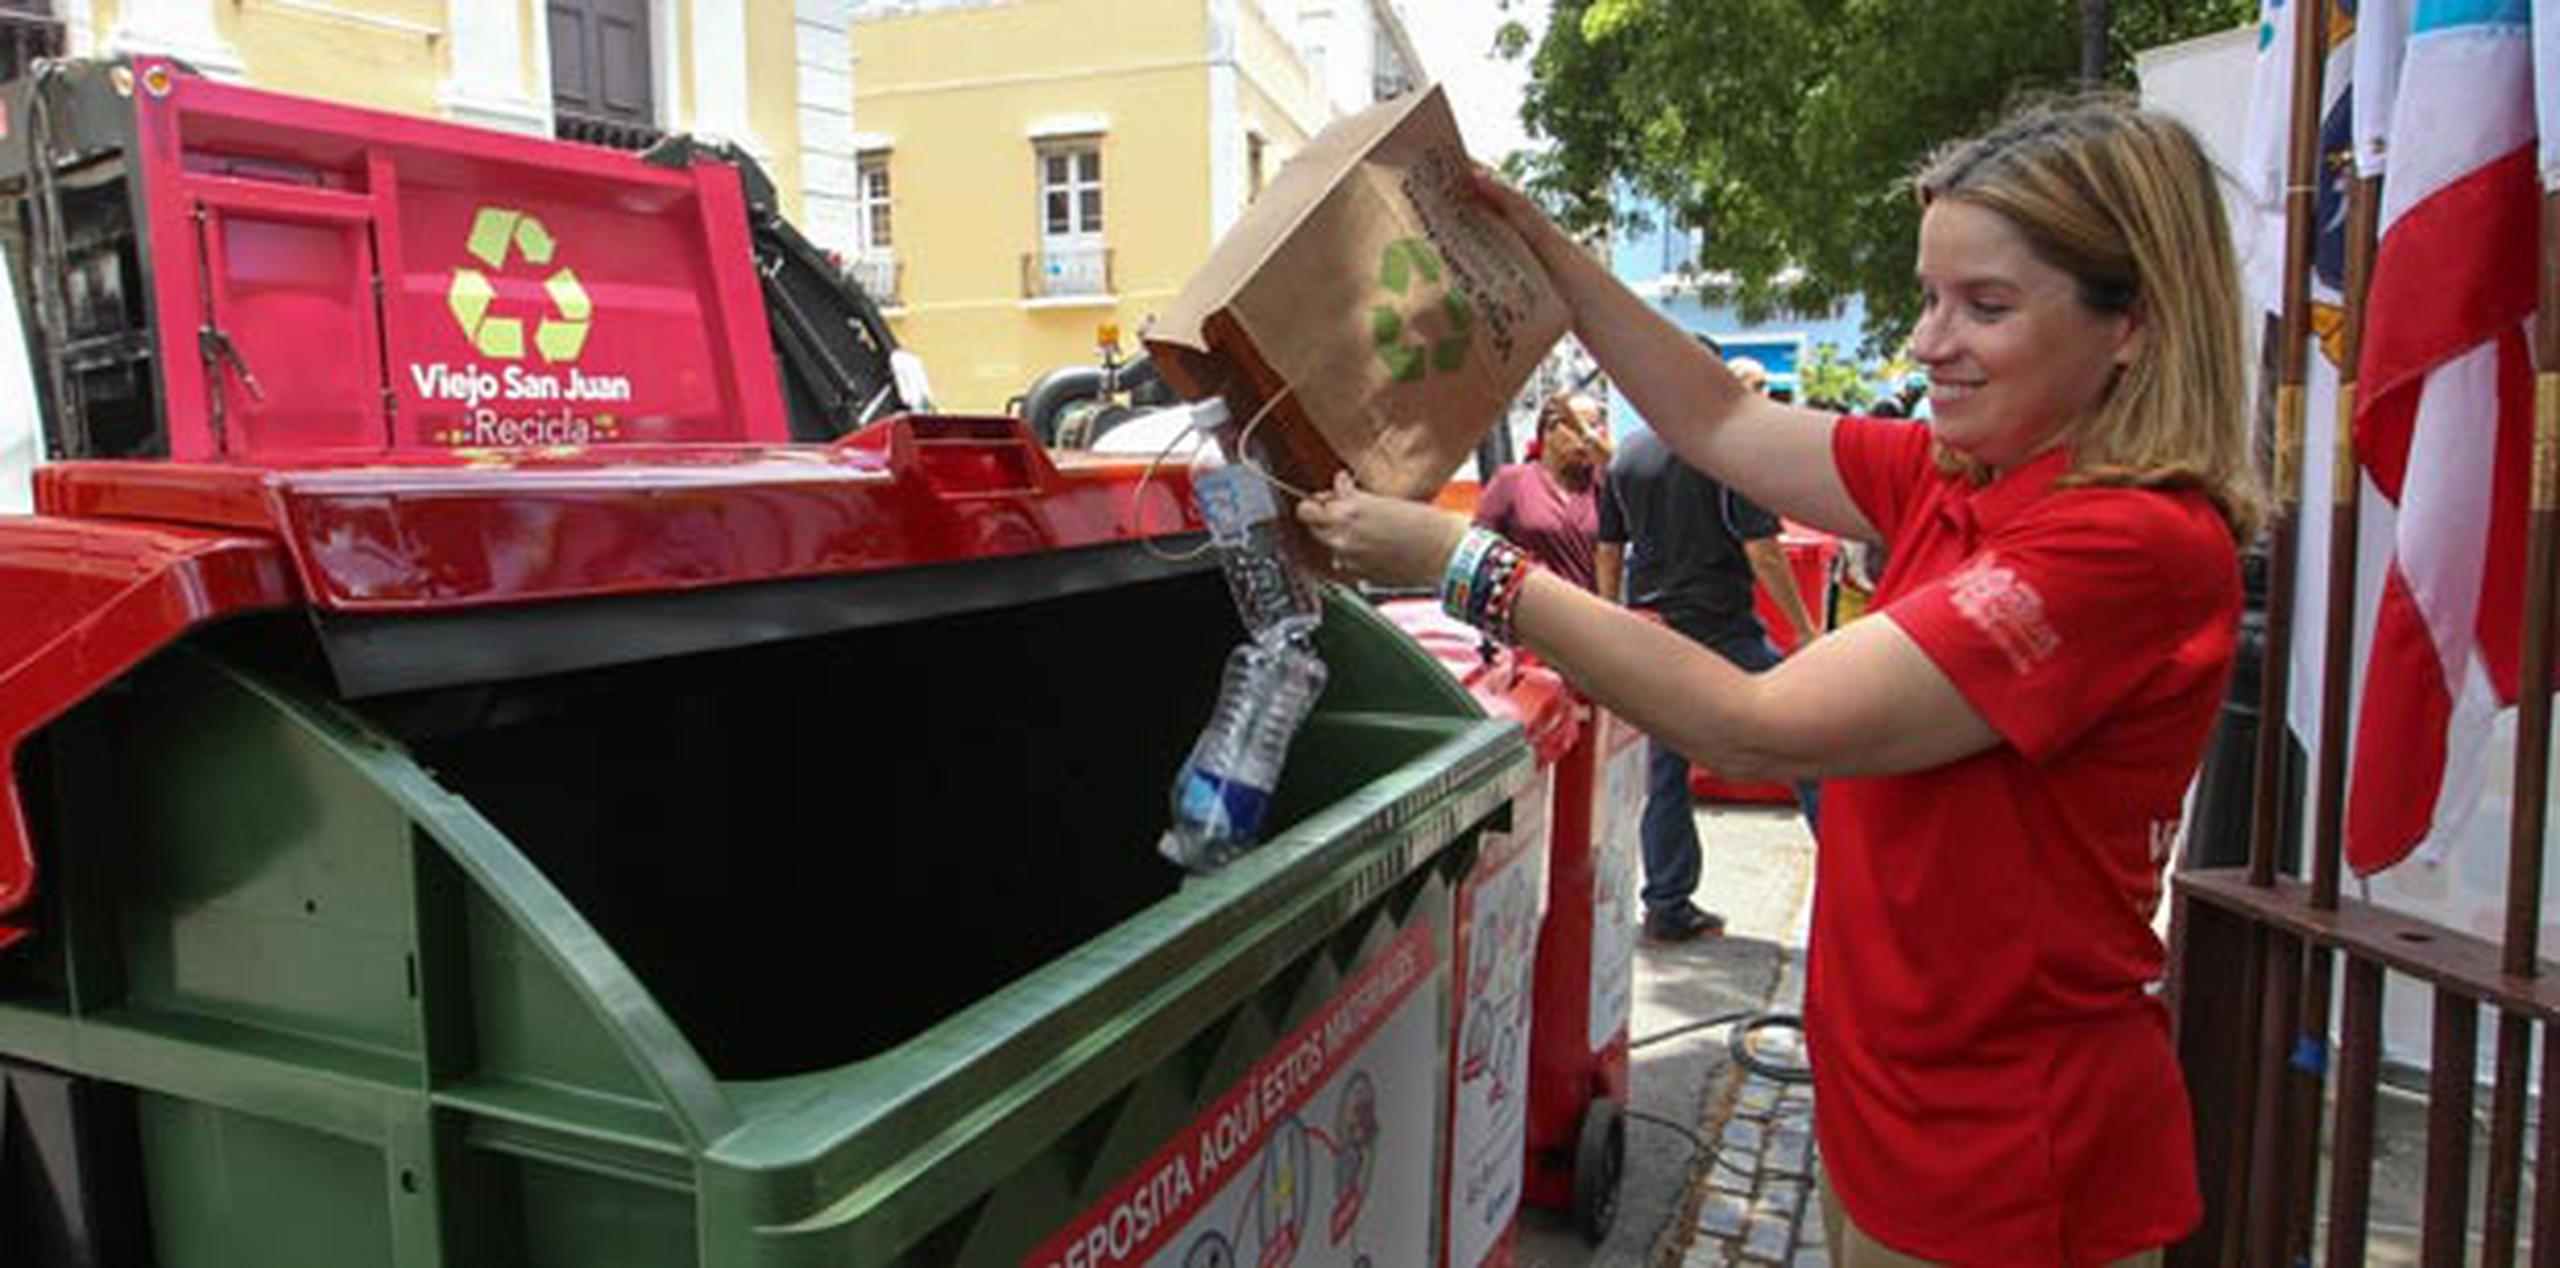 Según datos provistos por la ejecutiva municipal, en el Viejo San Juan se generan 28,000 libras  de basura todos los días. (Suministrada)